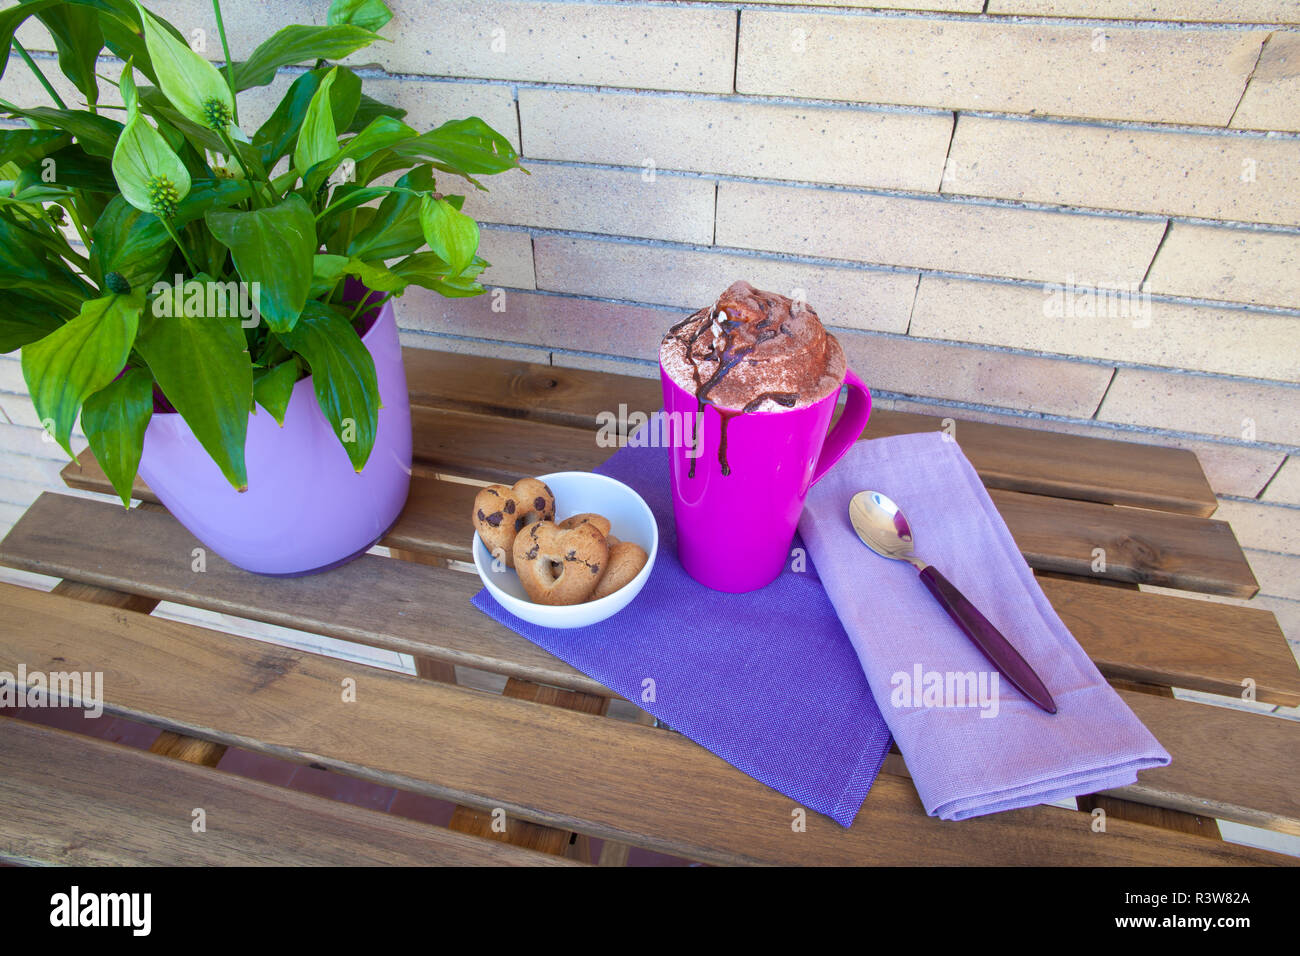 Cookies et cappuccino en plein air - petit-déjeuner italien en violet Banque D'Images